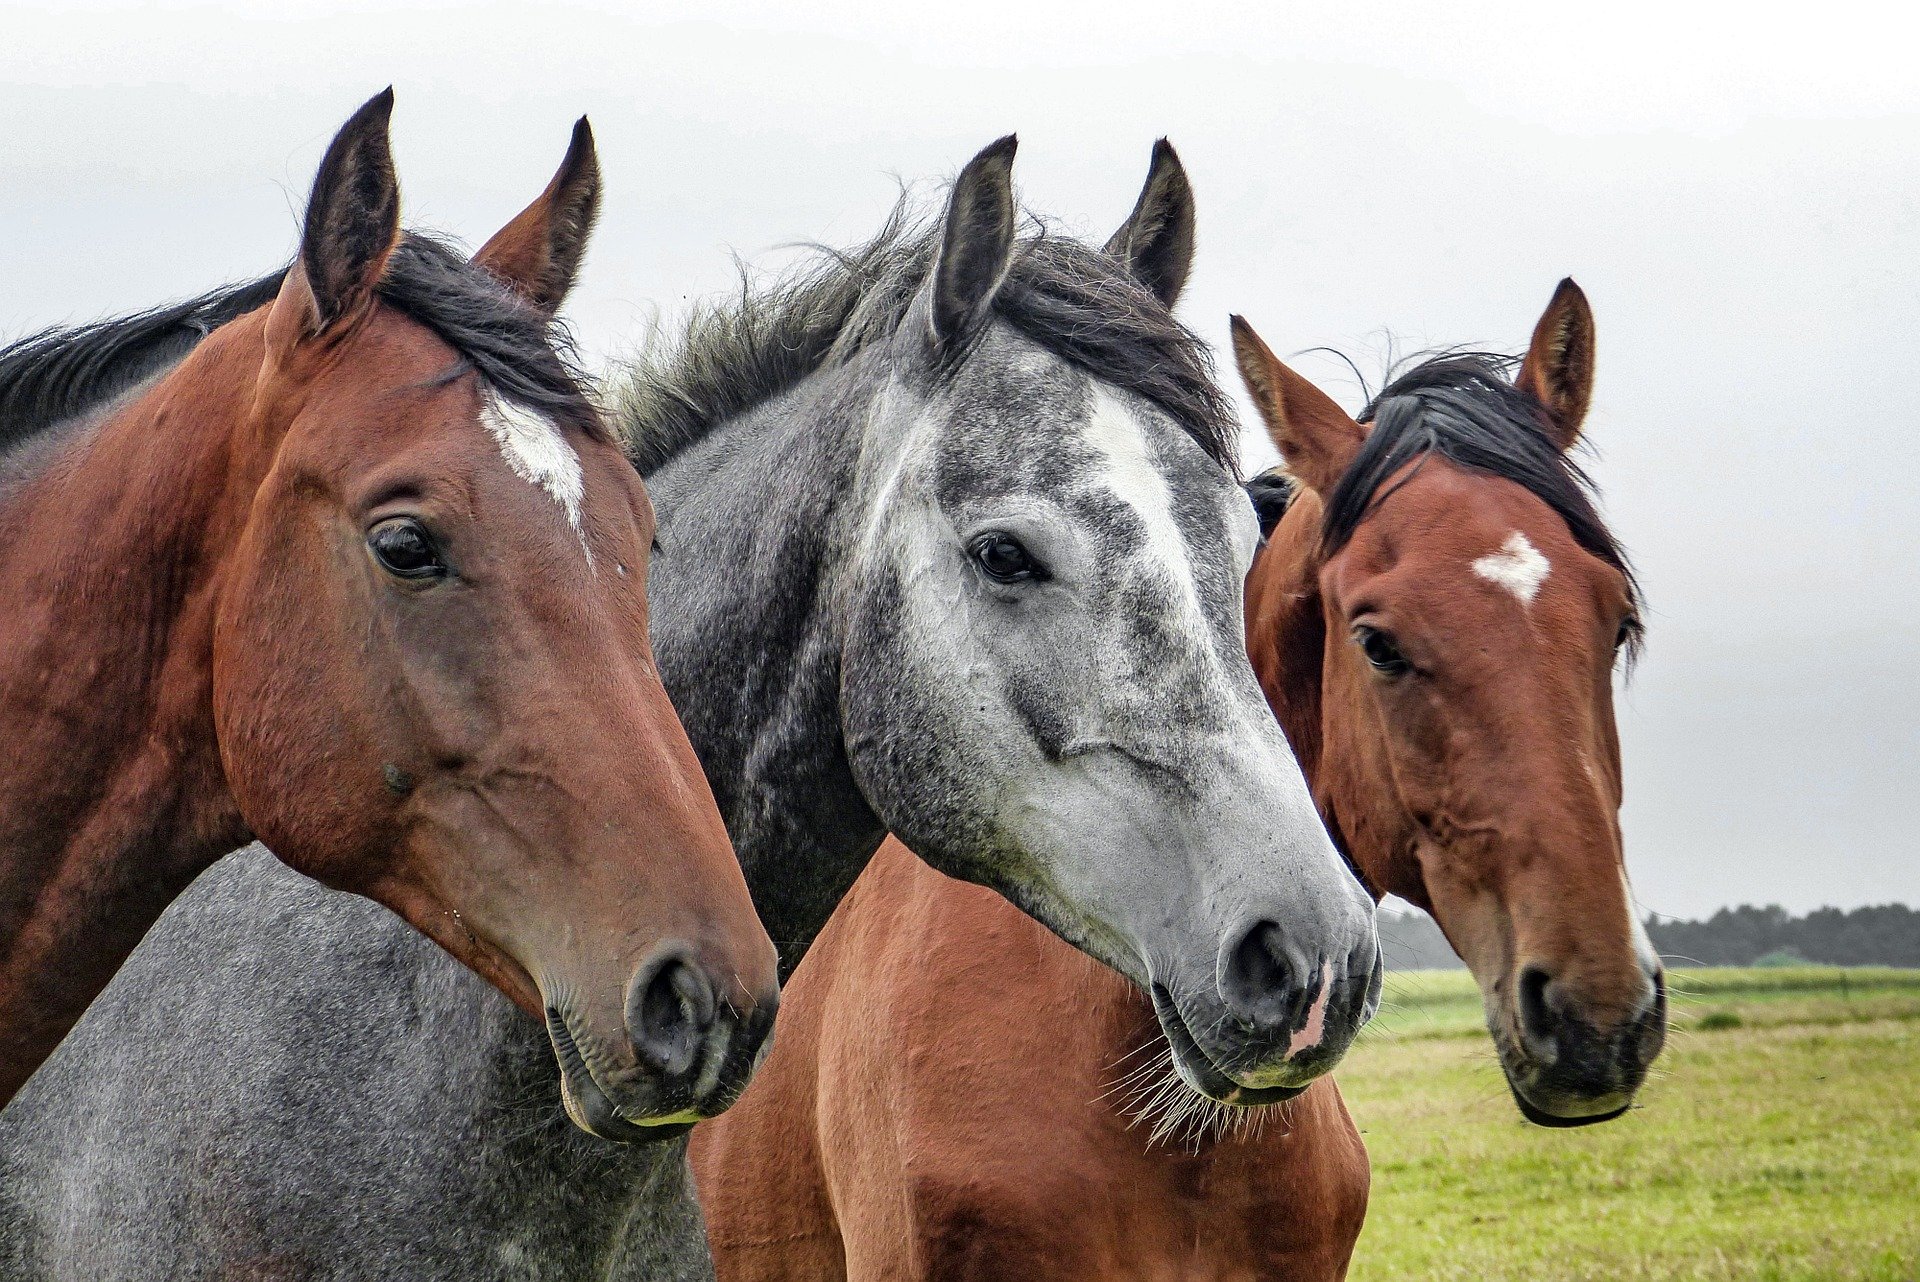 Drei Pferde, zwei braune, ein graues, stehen seitlich nebeneinander auf einer grünen Wiese